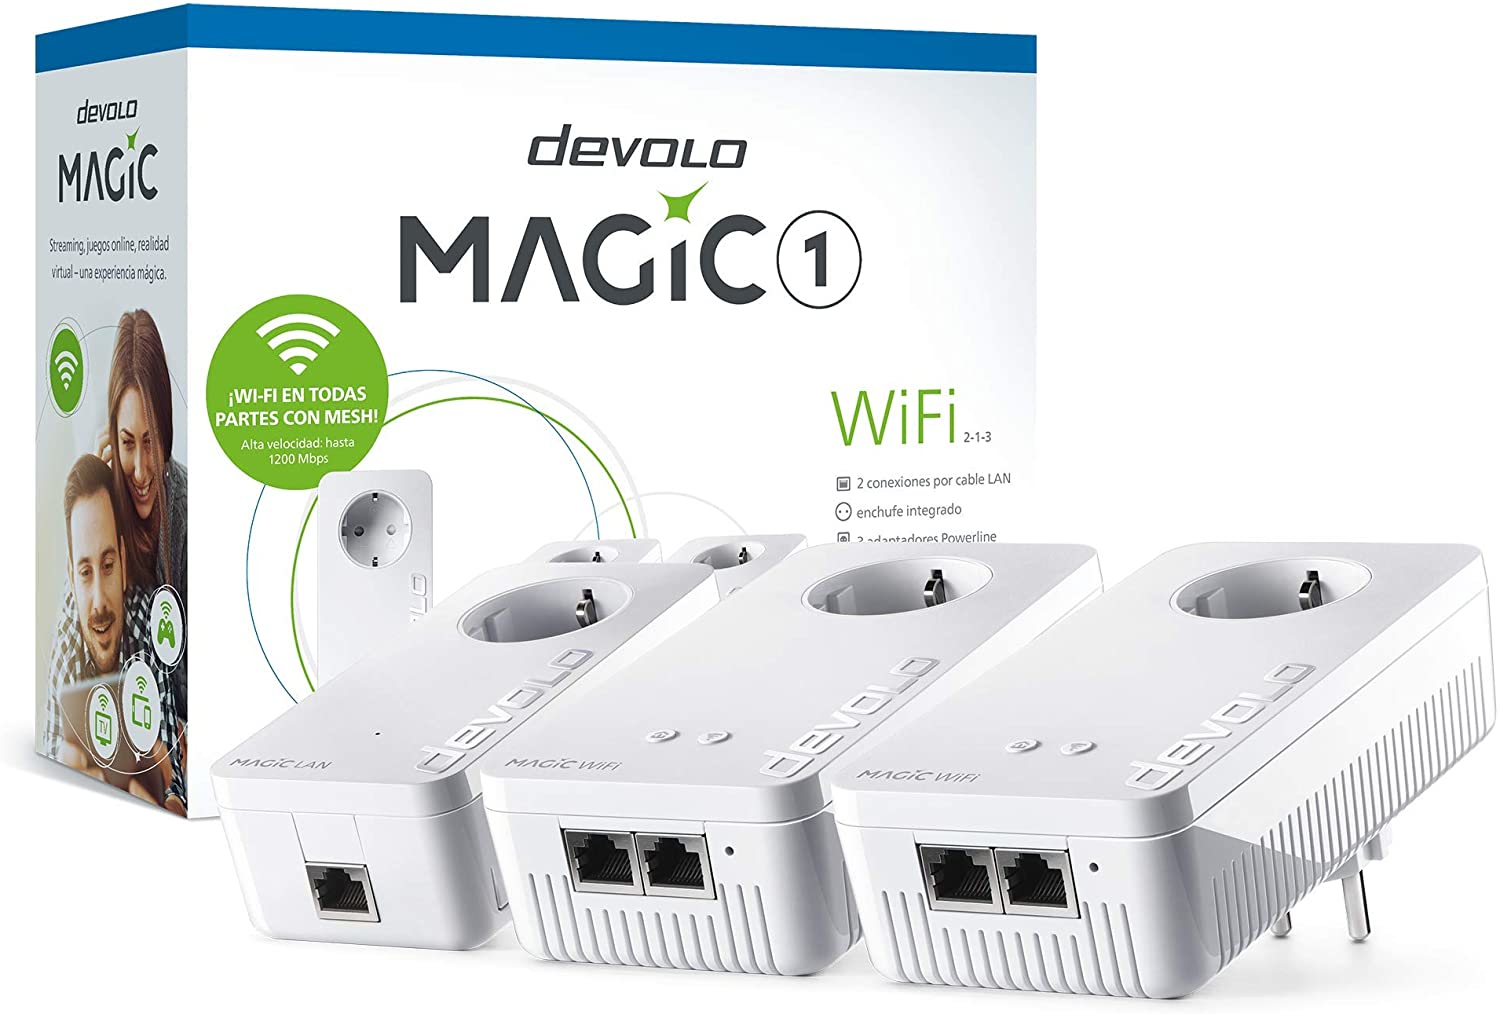 Devolo Magic 1 WiFi 2-1